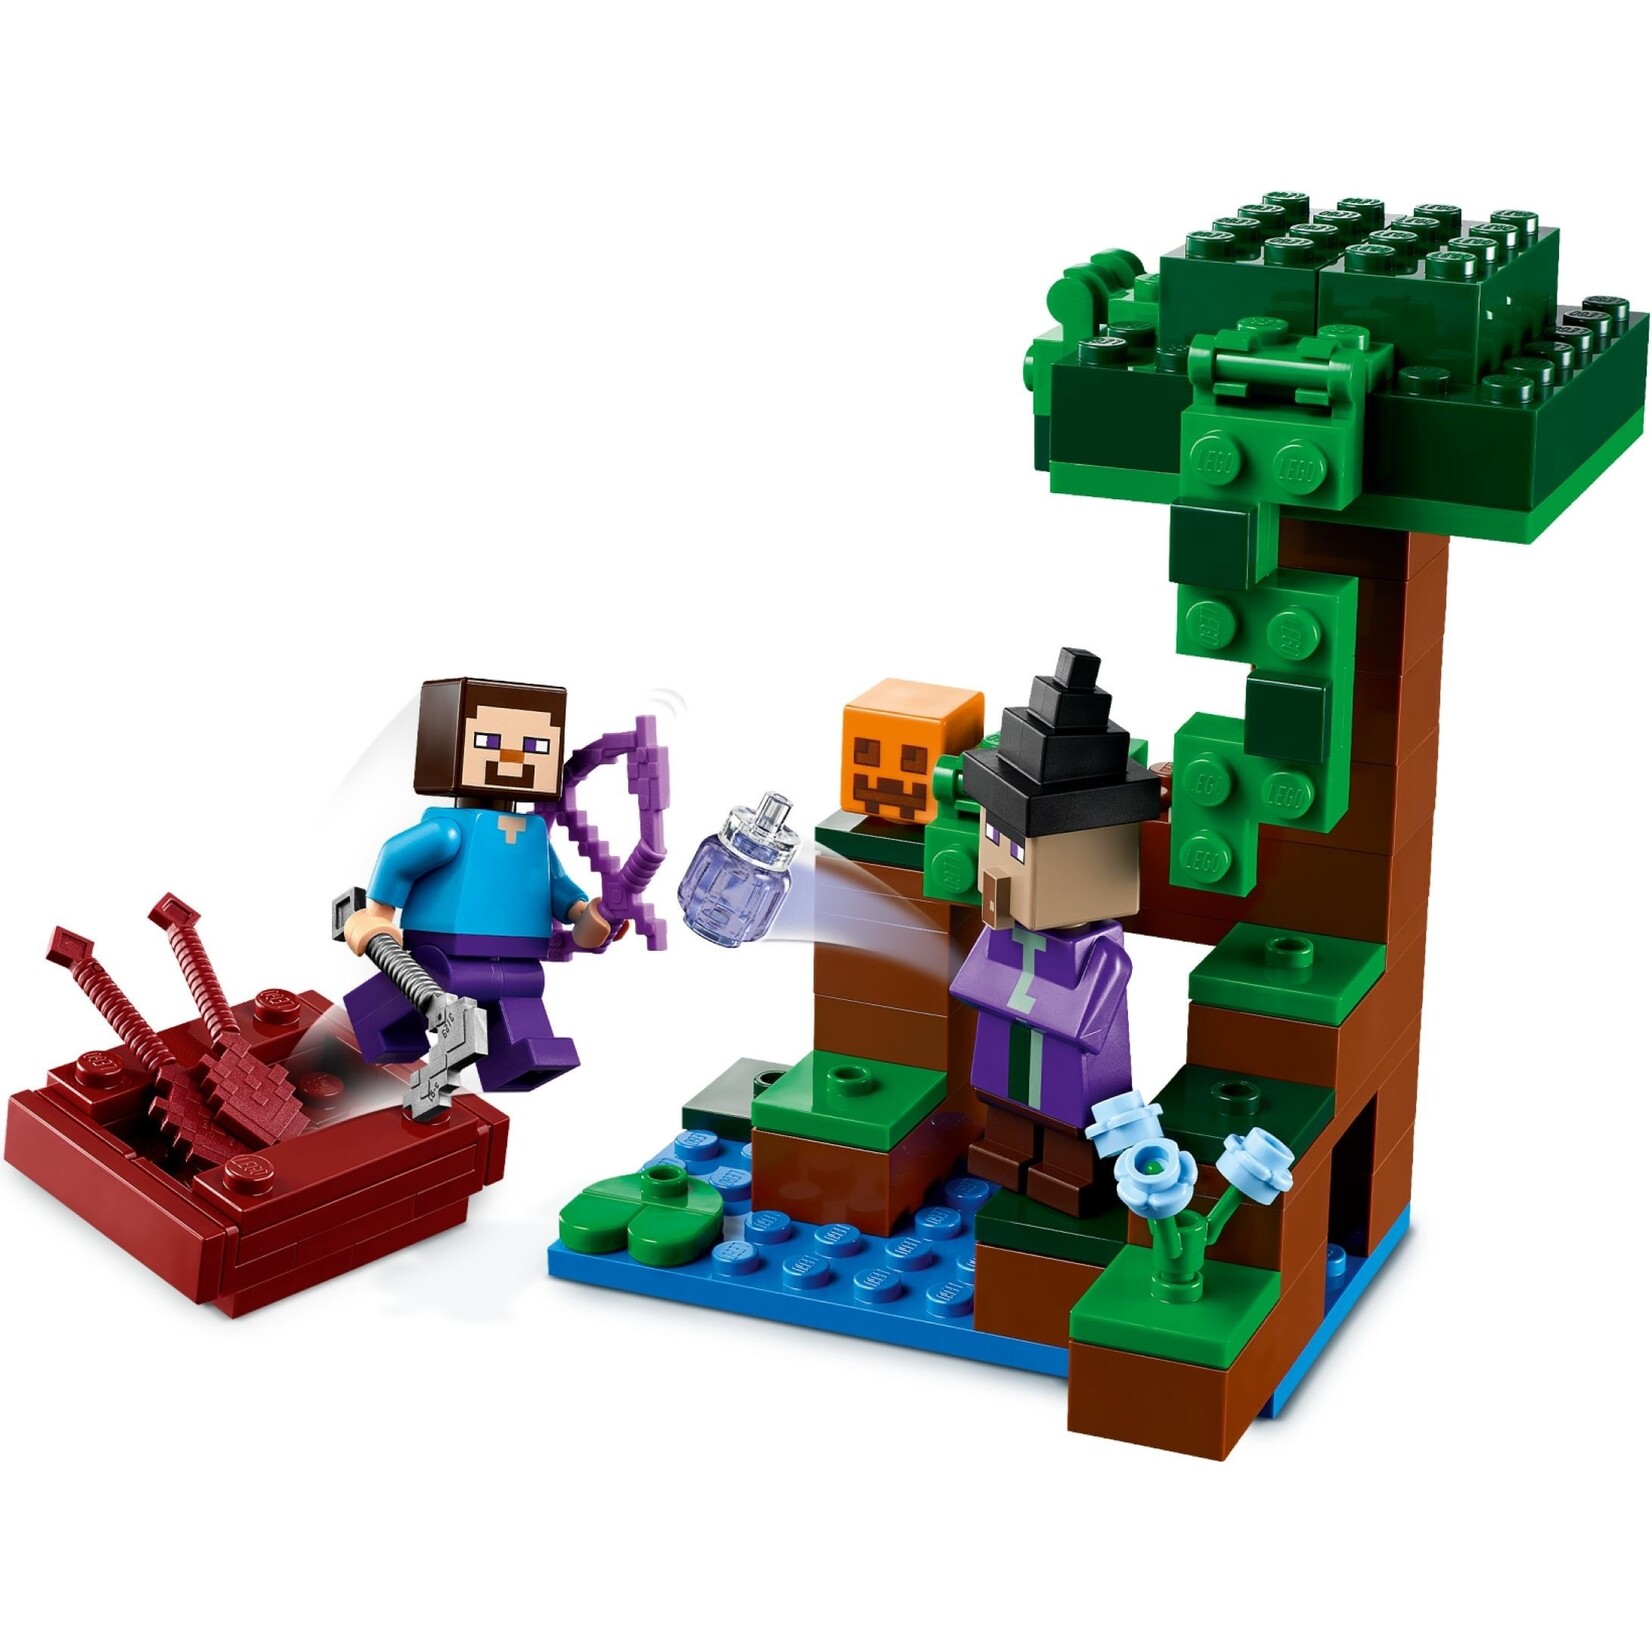 LEGO De Pompoennenboerderij - 21248